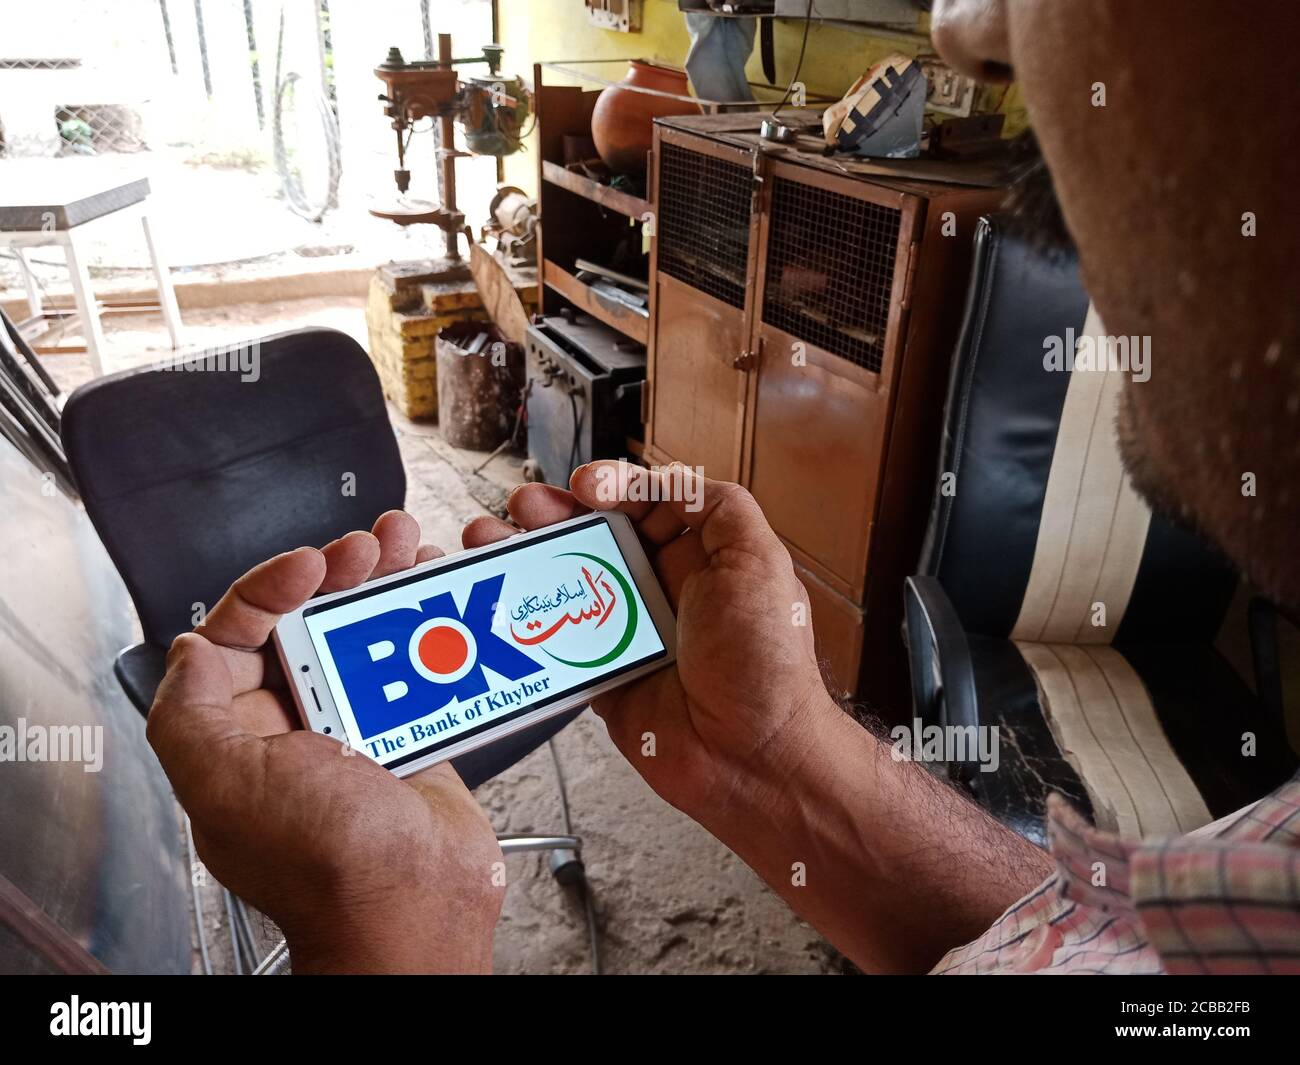 DISTRETTO KATNI, INDIA - 02 GIUGNO 2020: Un uomo indiano che detiene smartphone con la visualizzazione della banca del logo khyber sullo schermo, istruzione bancaria moderna c Foto Stock